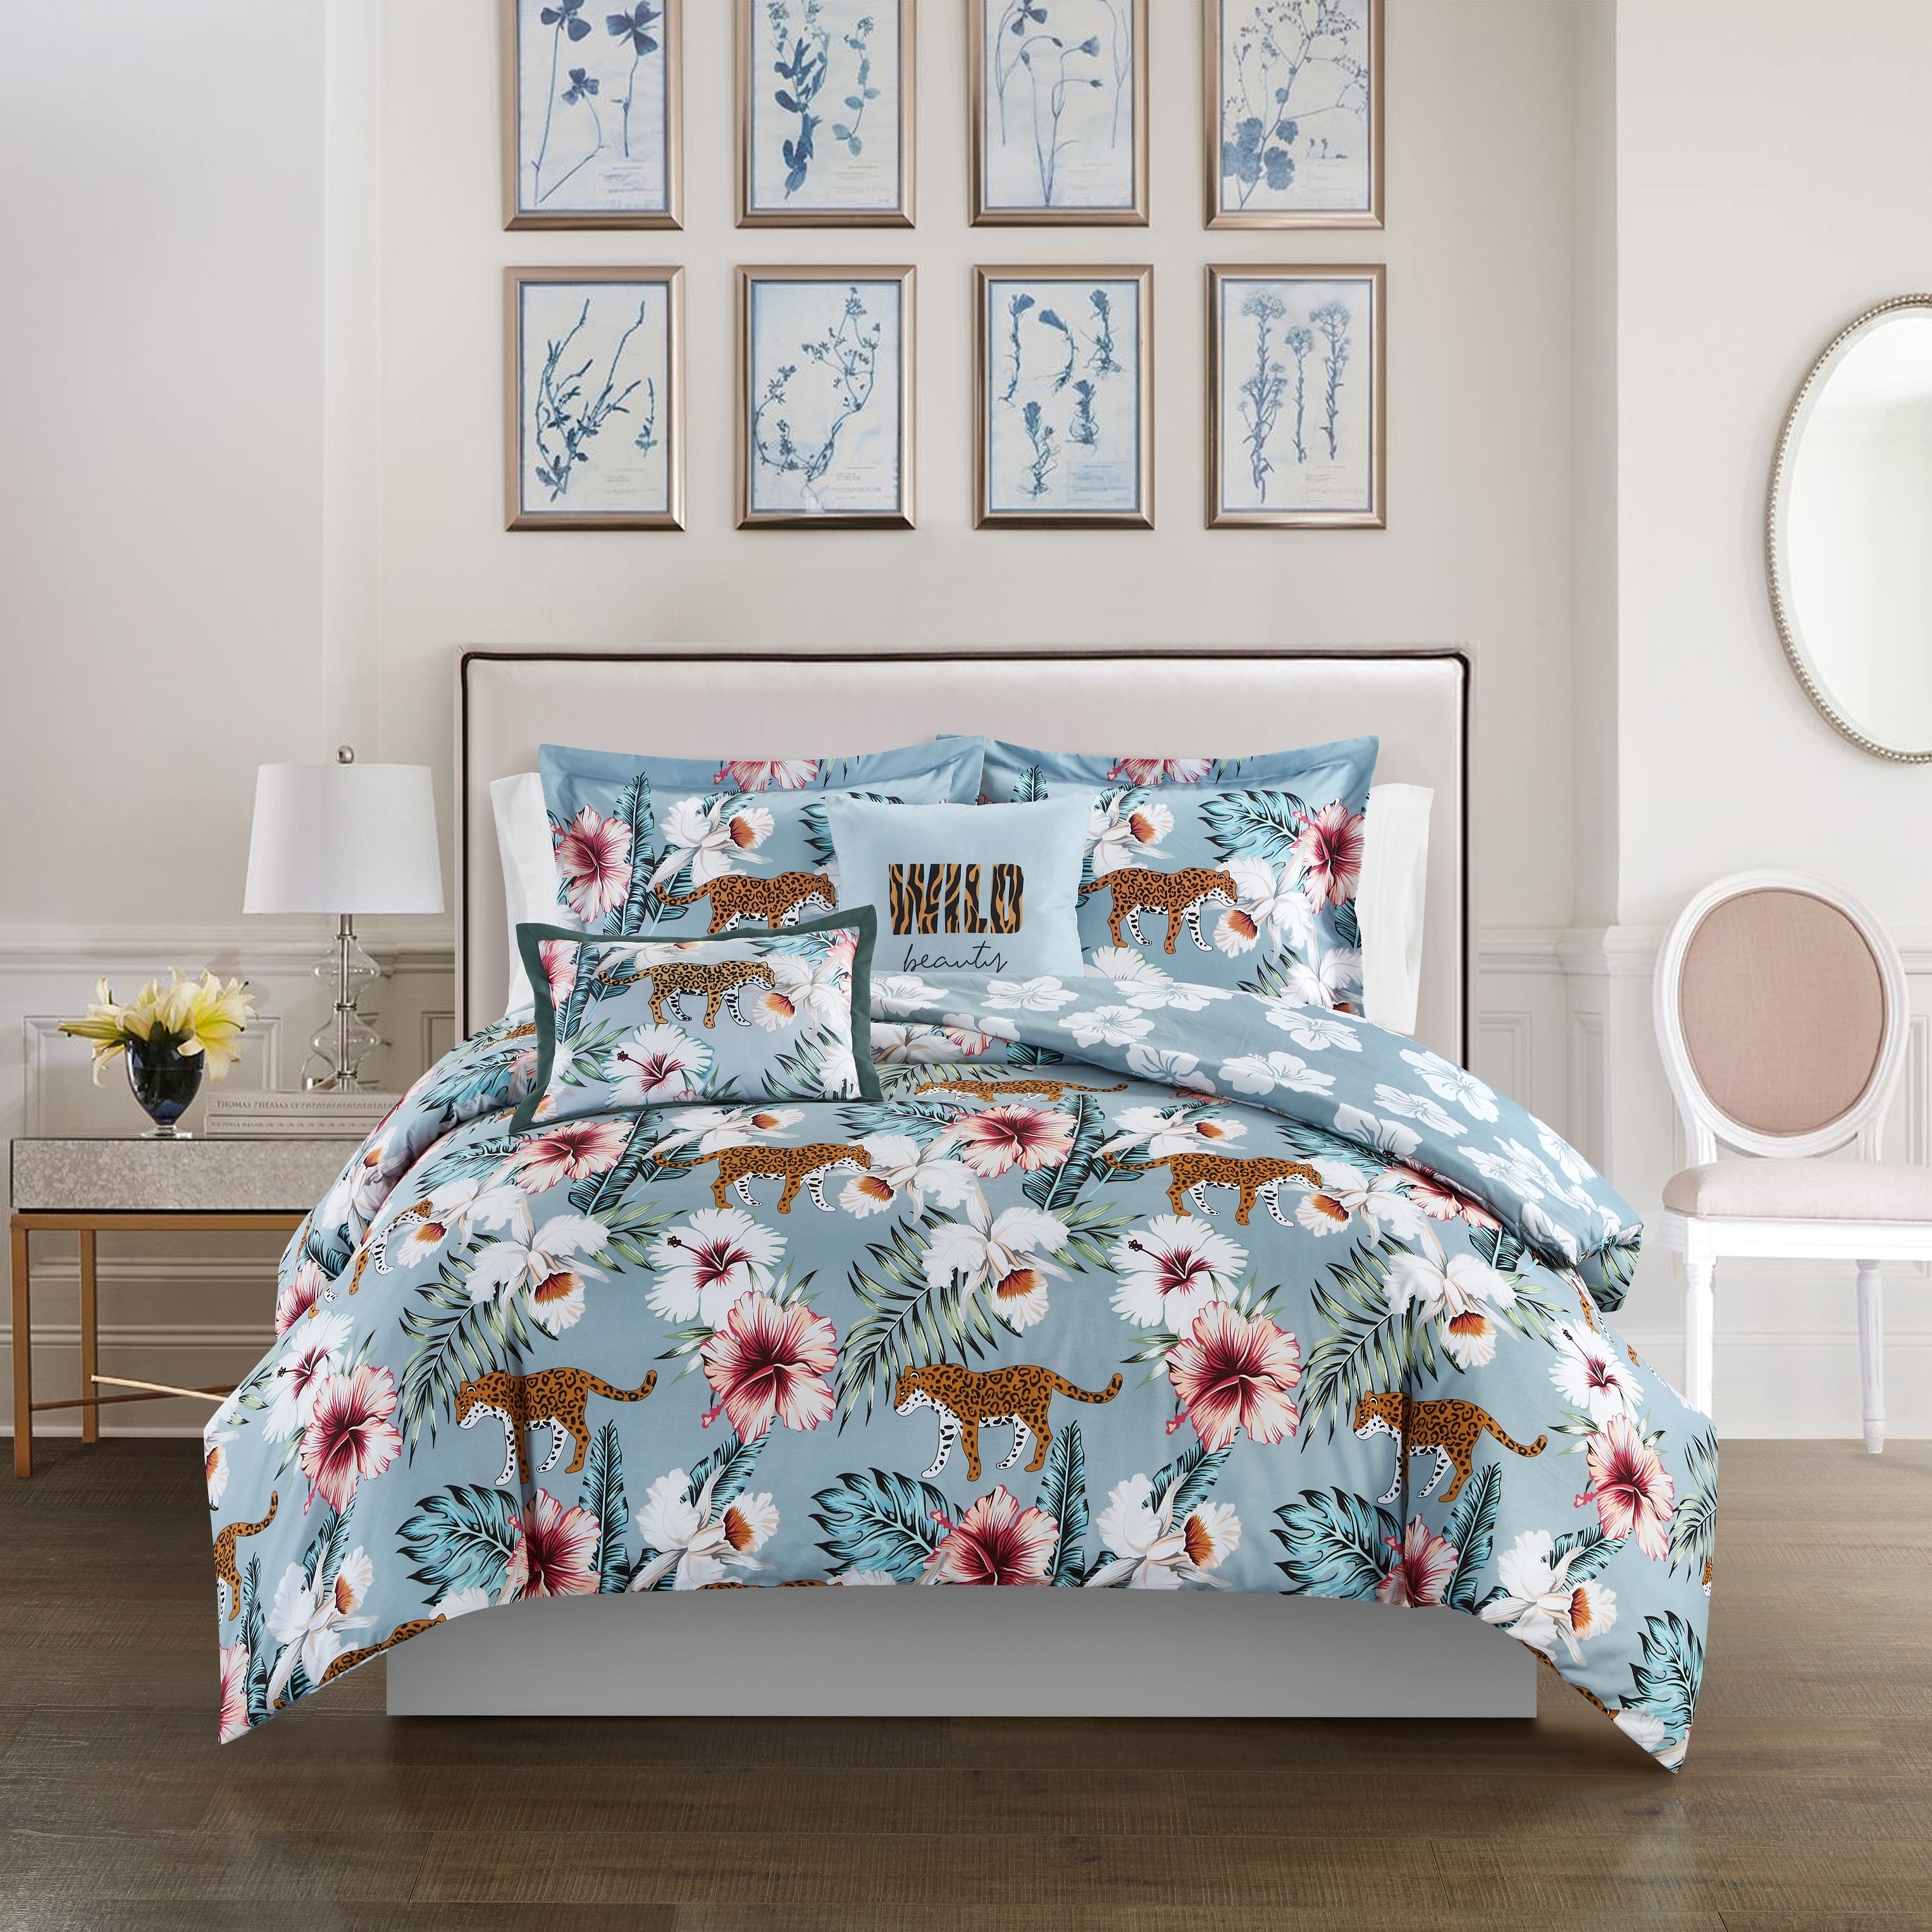 Emeraude 3 Piece Reversible Quilt Set Floral Print Cursive Script Design Bedding - Blue, Queen